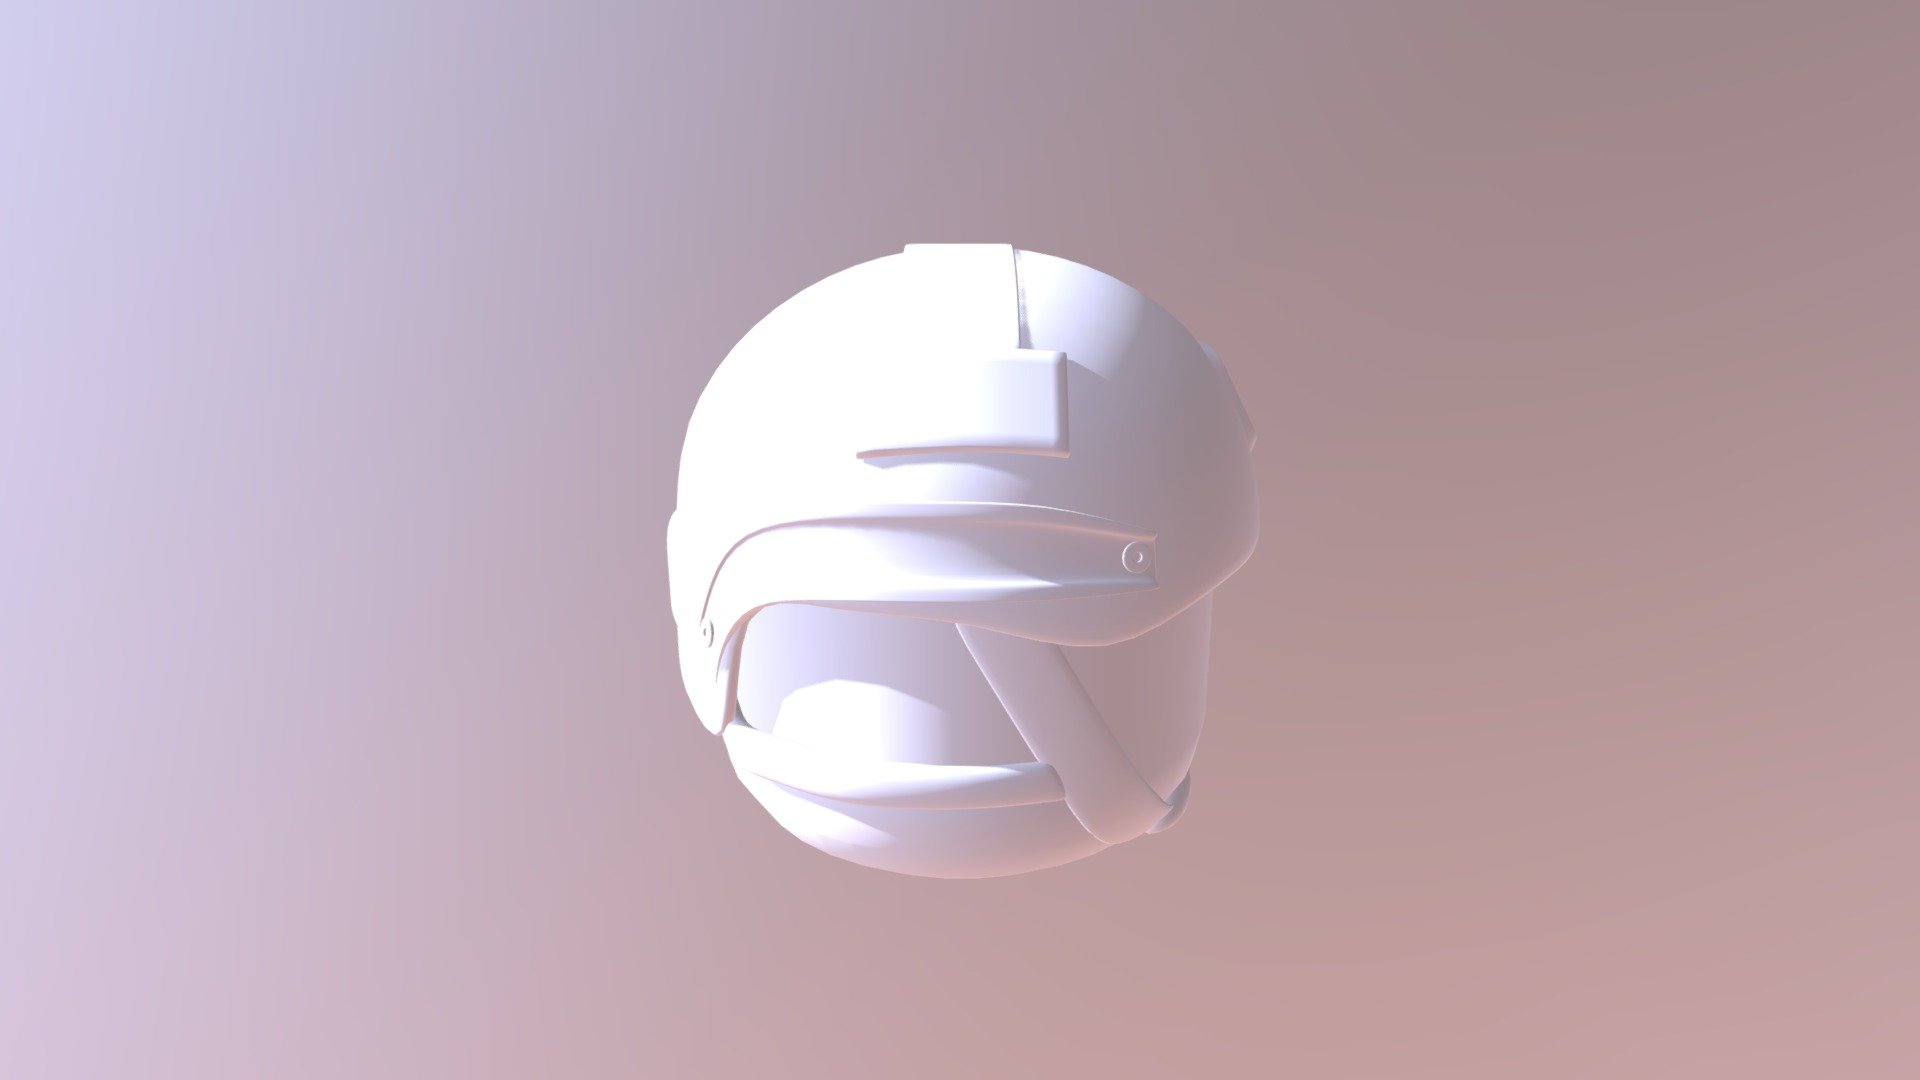 Roblox Fast Helmet 3d Model By Militia 405 Militia 405 7d867e7 - roblox pilot helmet